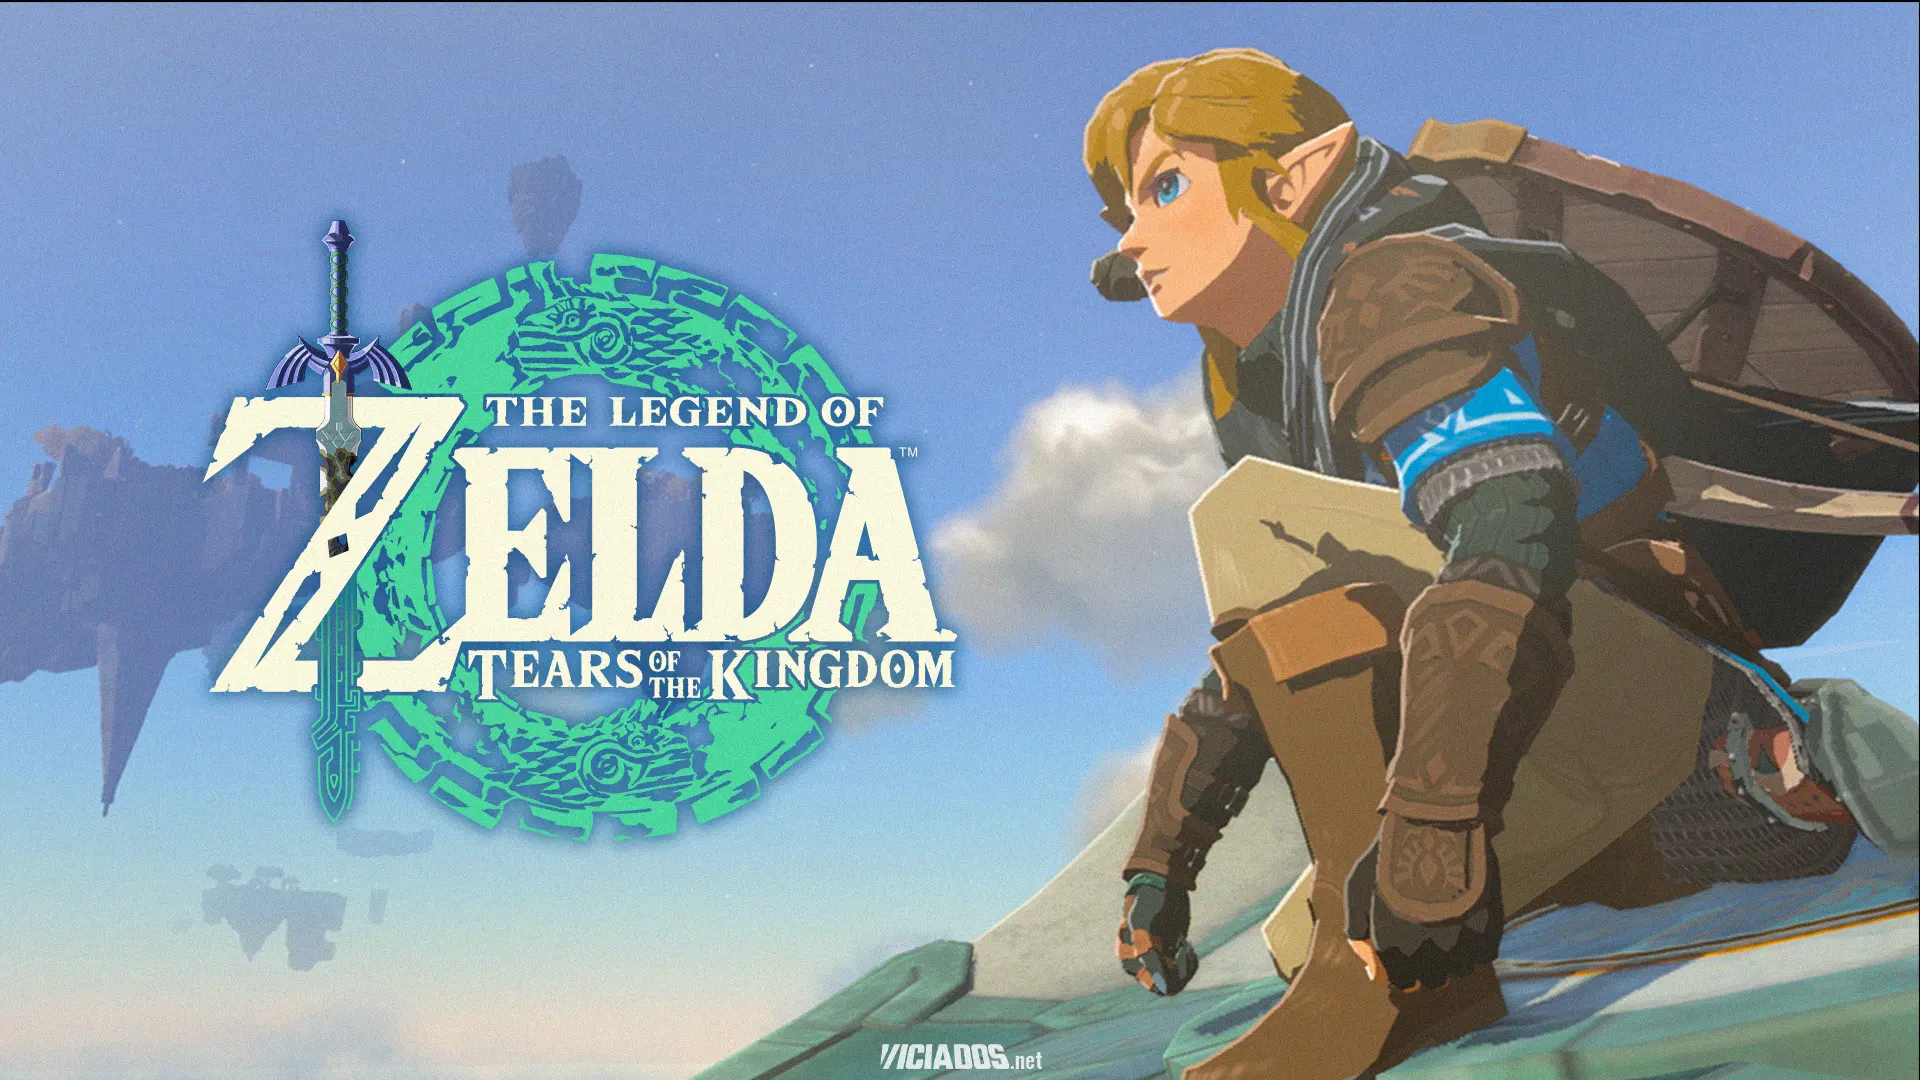 Nintendo e Sony anunciam filme live-action de The Legend of Zelda 2024 Portal Viciados